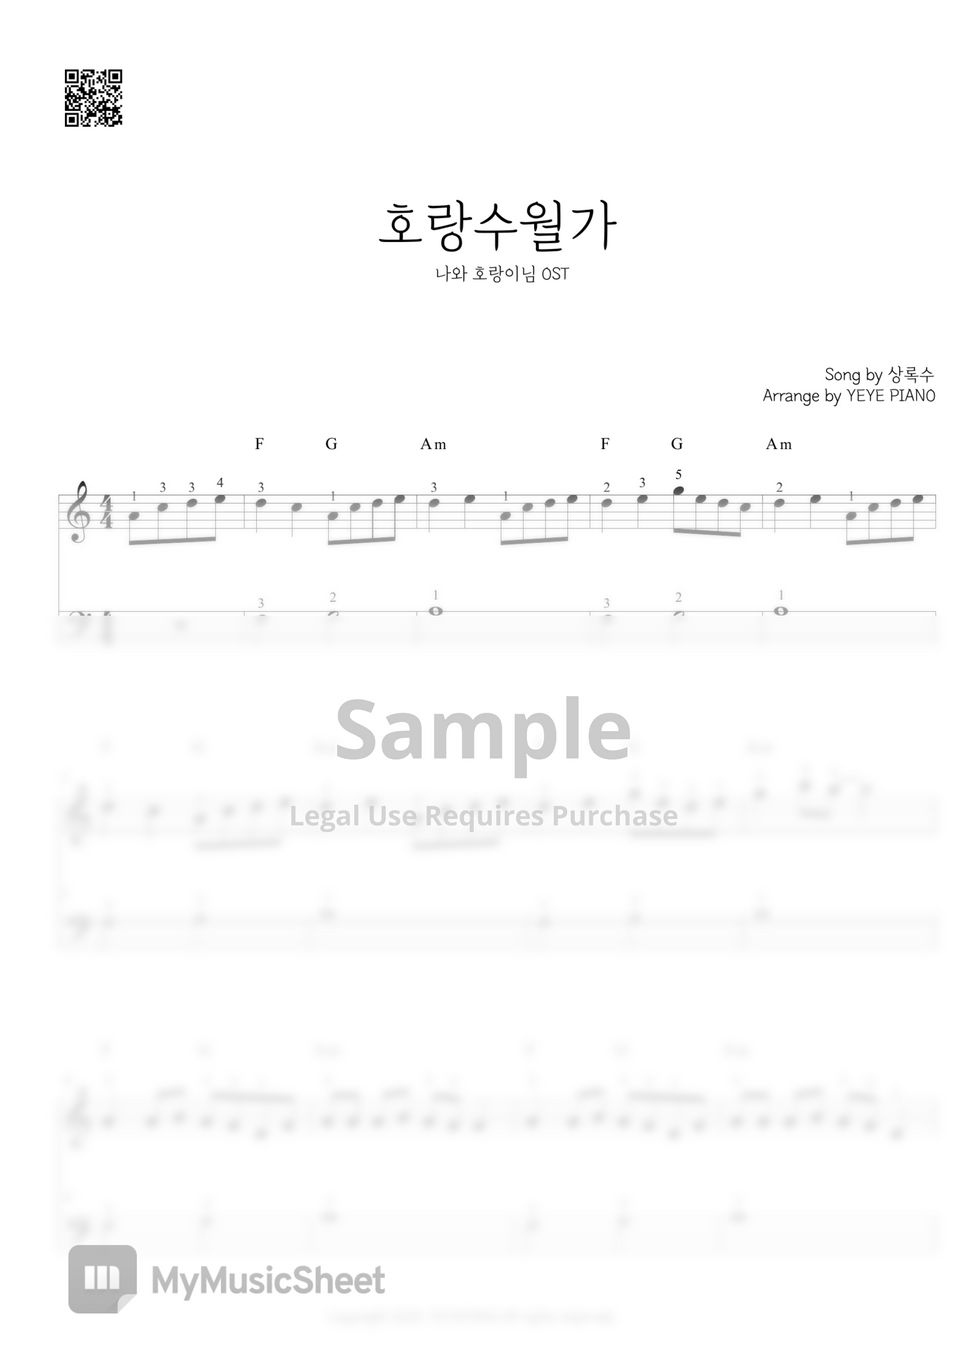 상록수 - 호랑수월가 (나와 호랑이님 OST) by 예예피아노